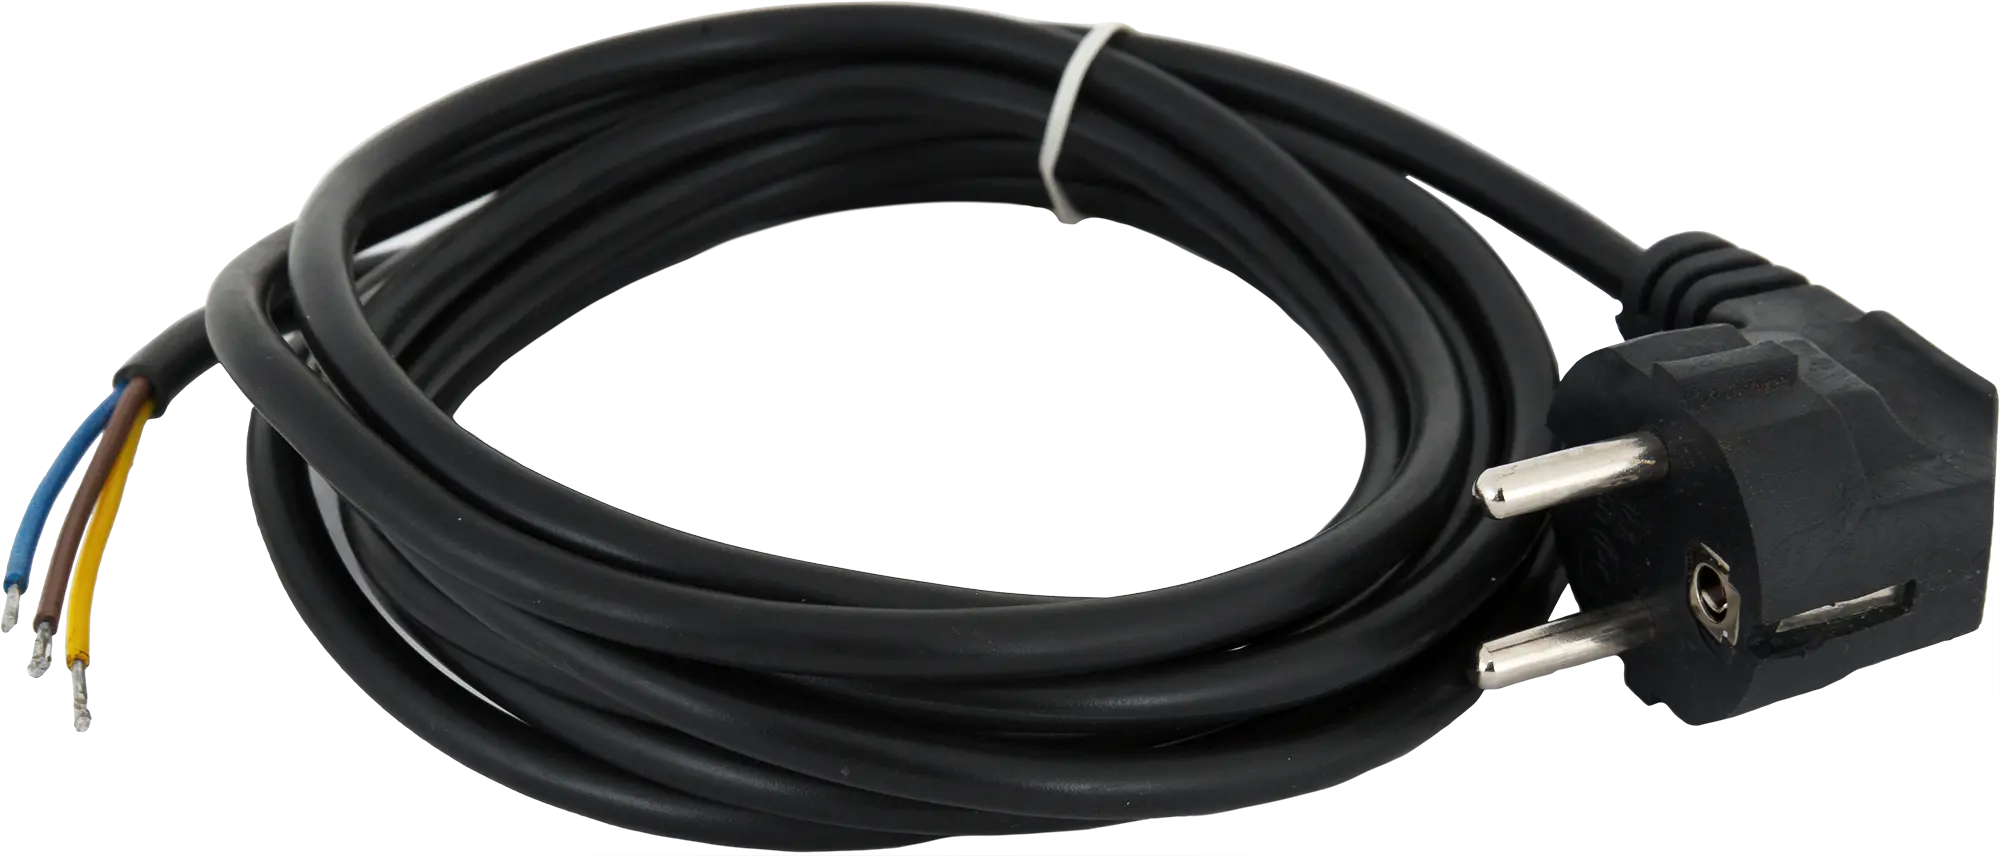 Шнур сетевой с заземлением 10 A 3 м цвет чёрный шнур сетевой с заземлением 10 a 1 5 м цвет чёрный